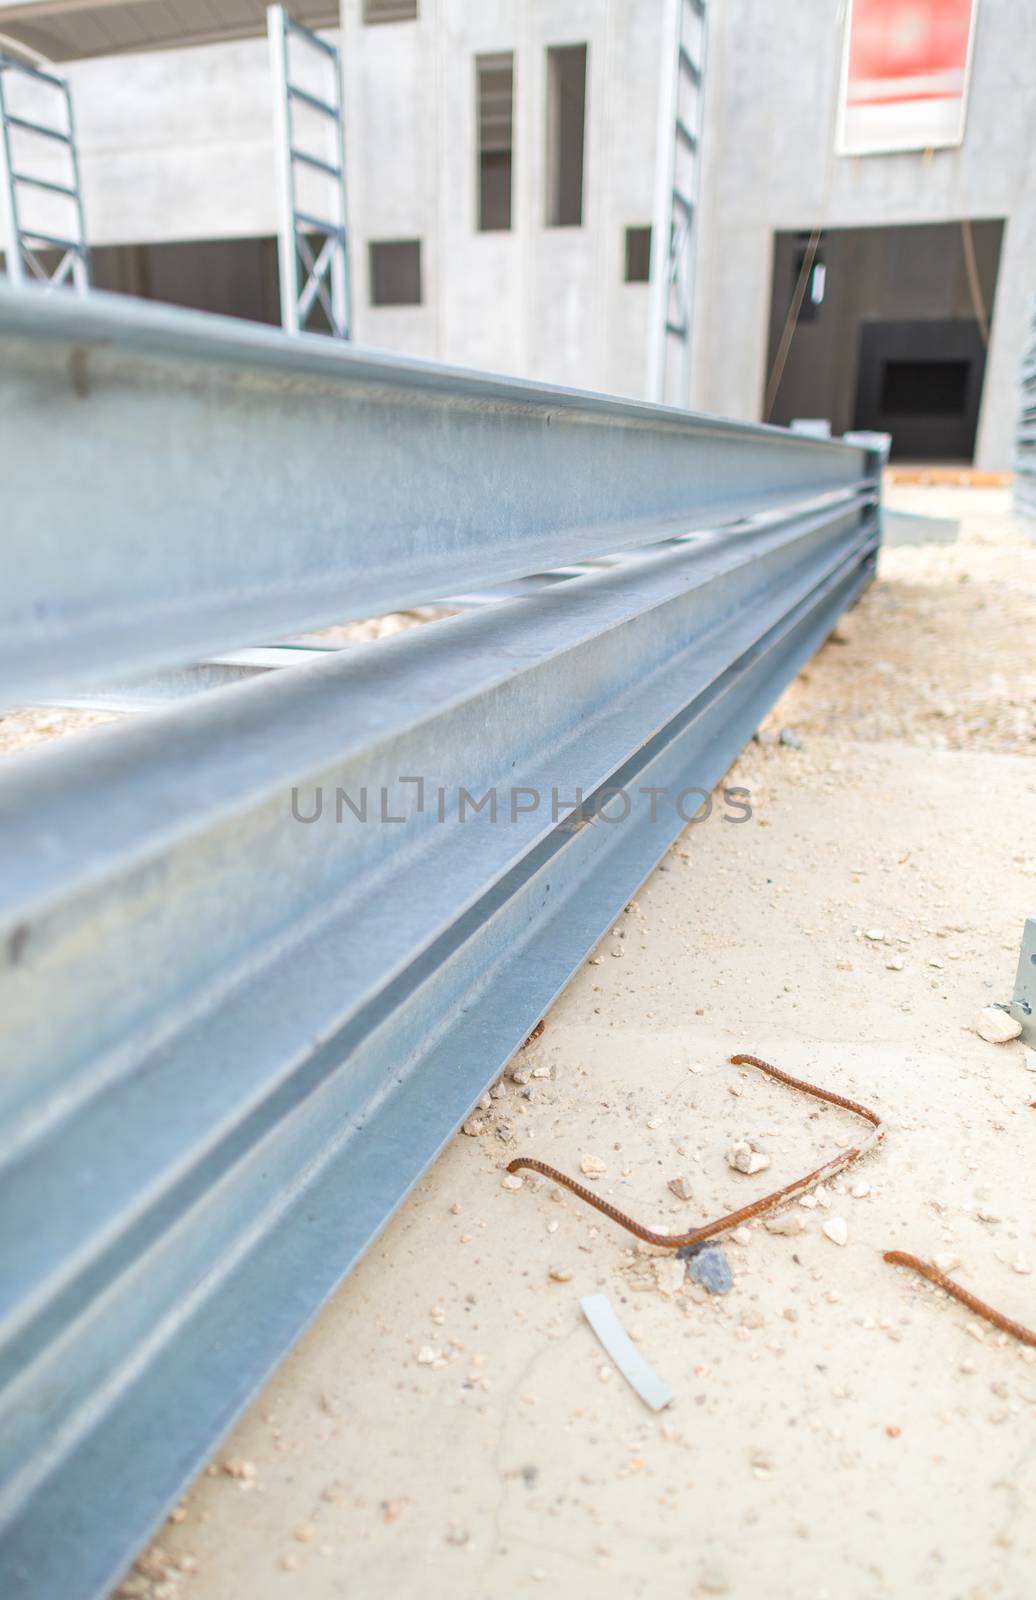 Steel girders in outdoor warehouse by jovannig